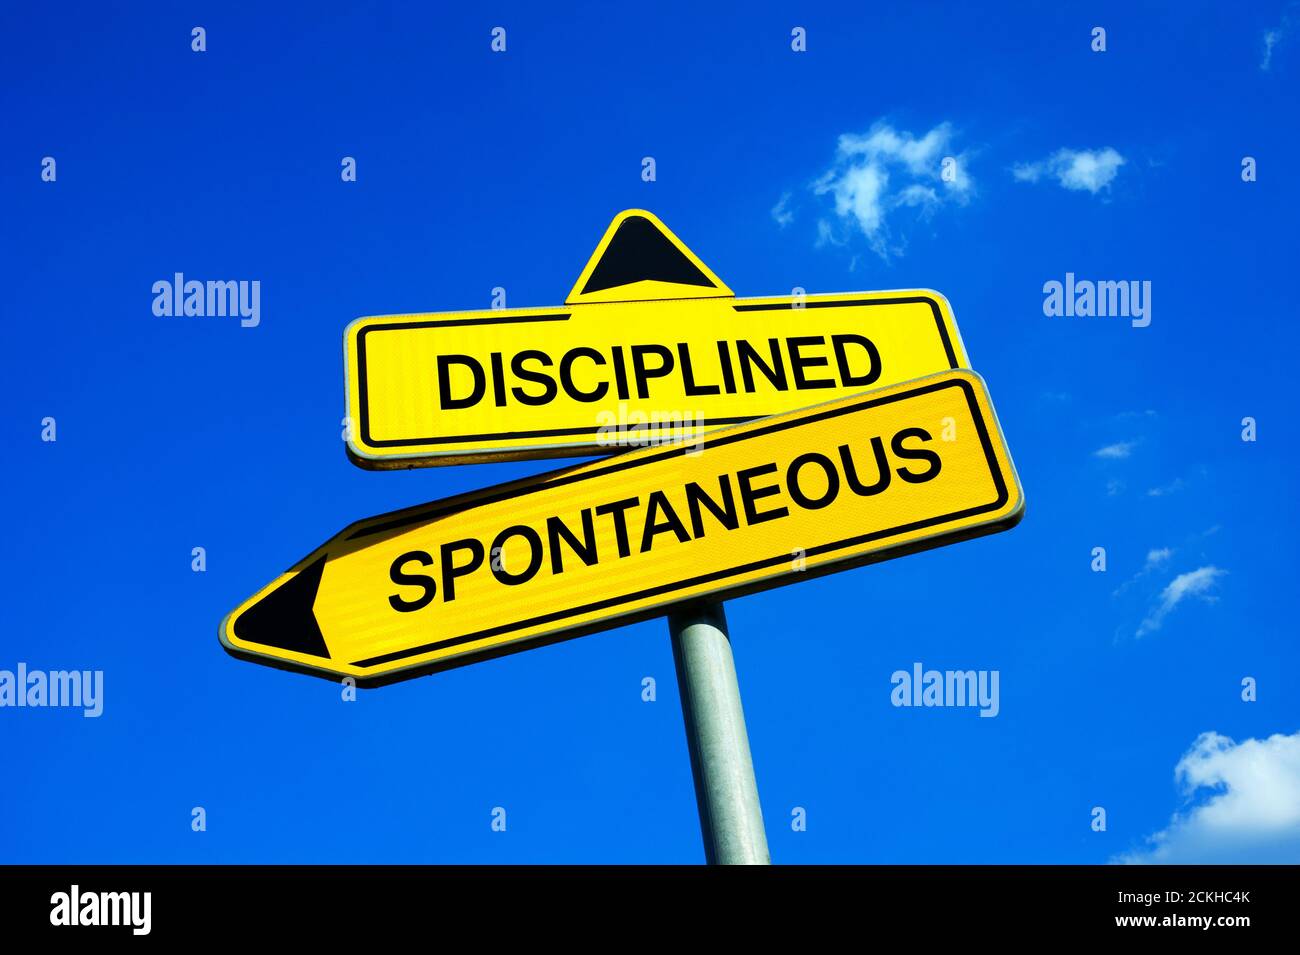 Diszipliniert vs spontan - Verkehrszeichen mit zwei Optionen - sein, ernst, rational, starr und String oder sorglos, impulsiv und einfach Stockfoto